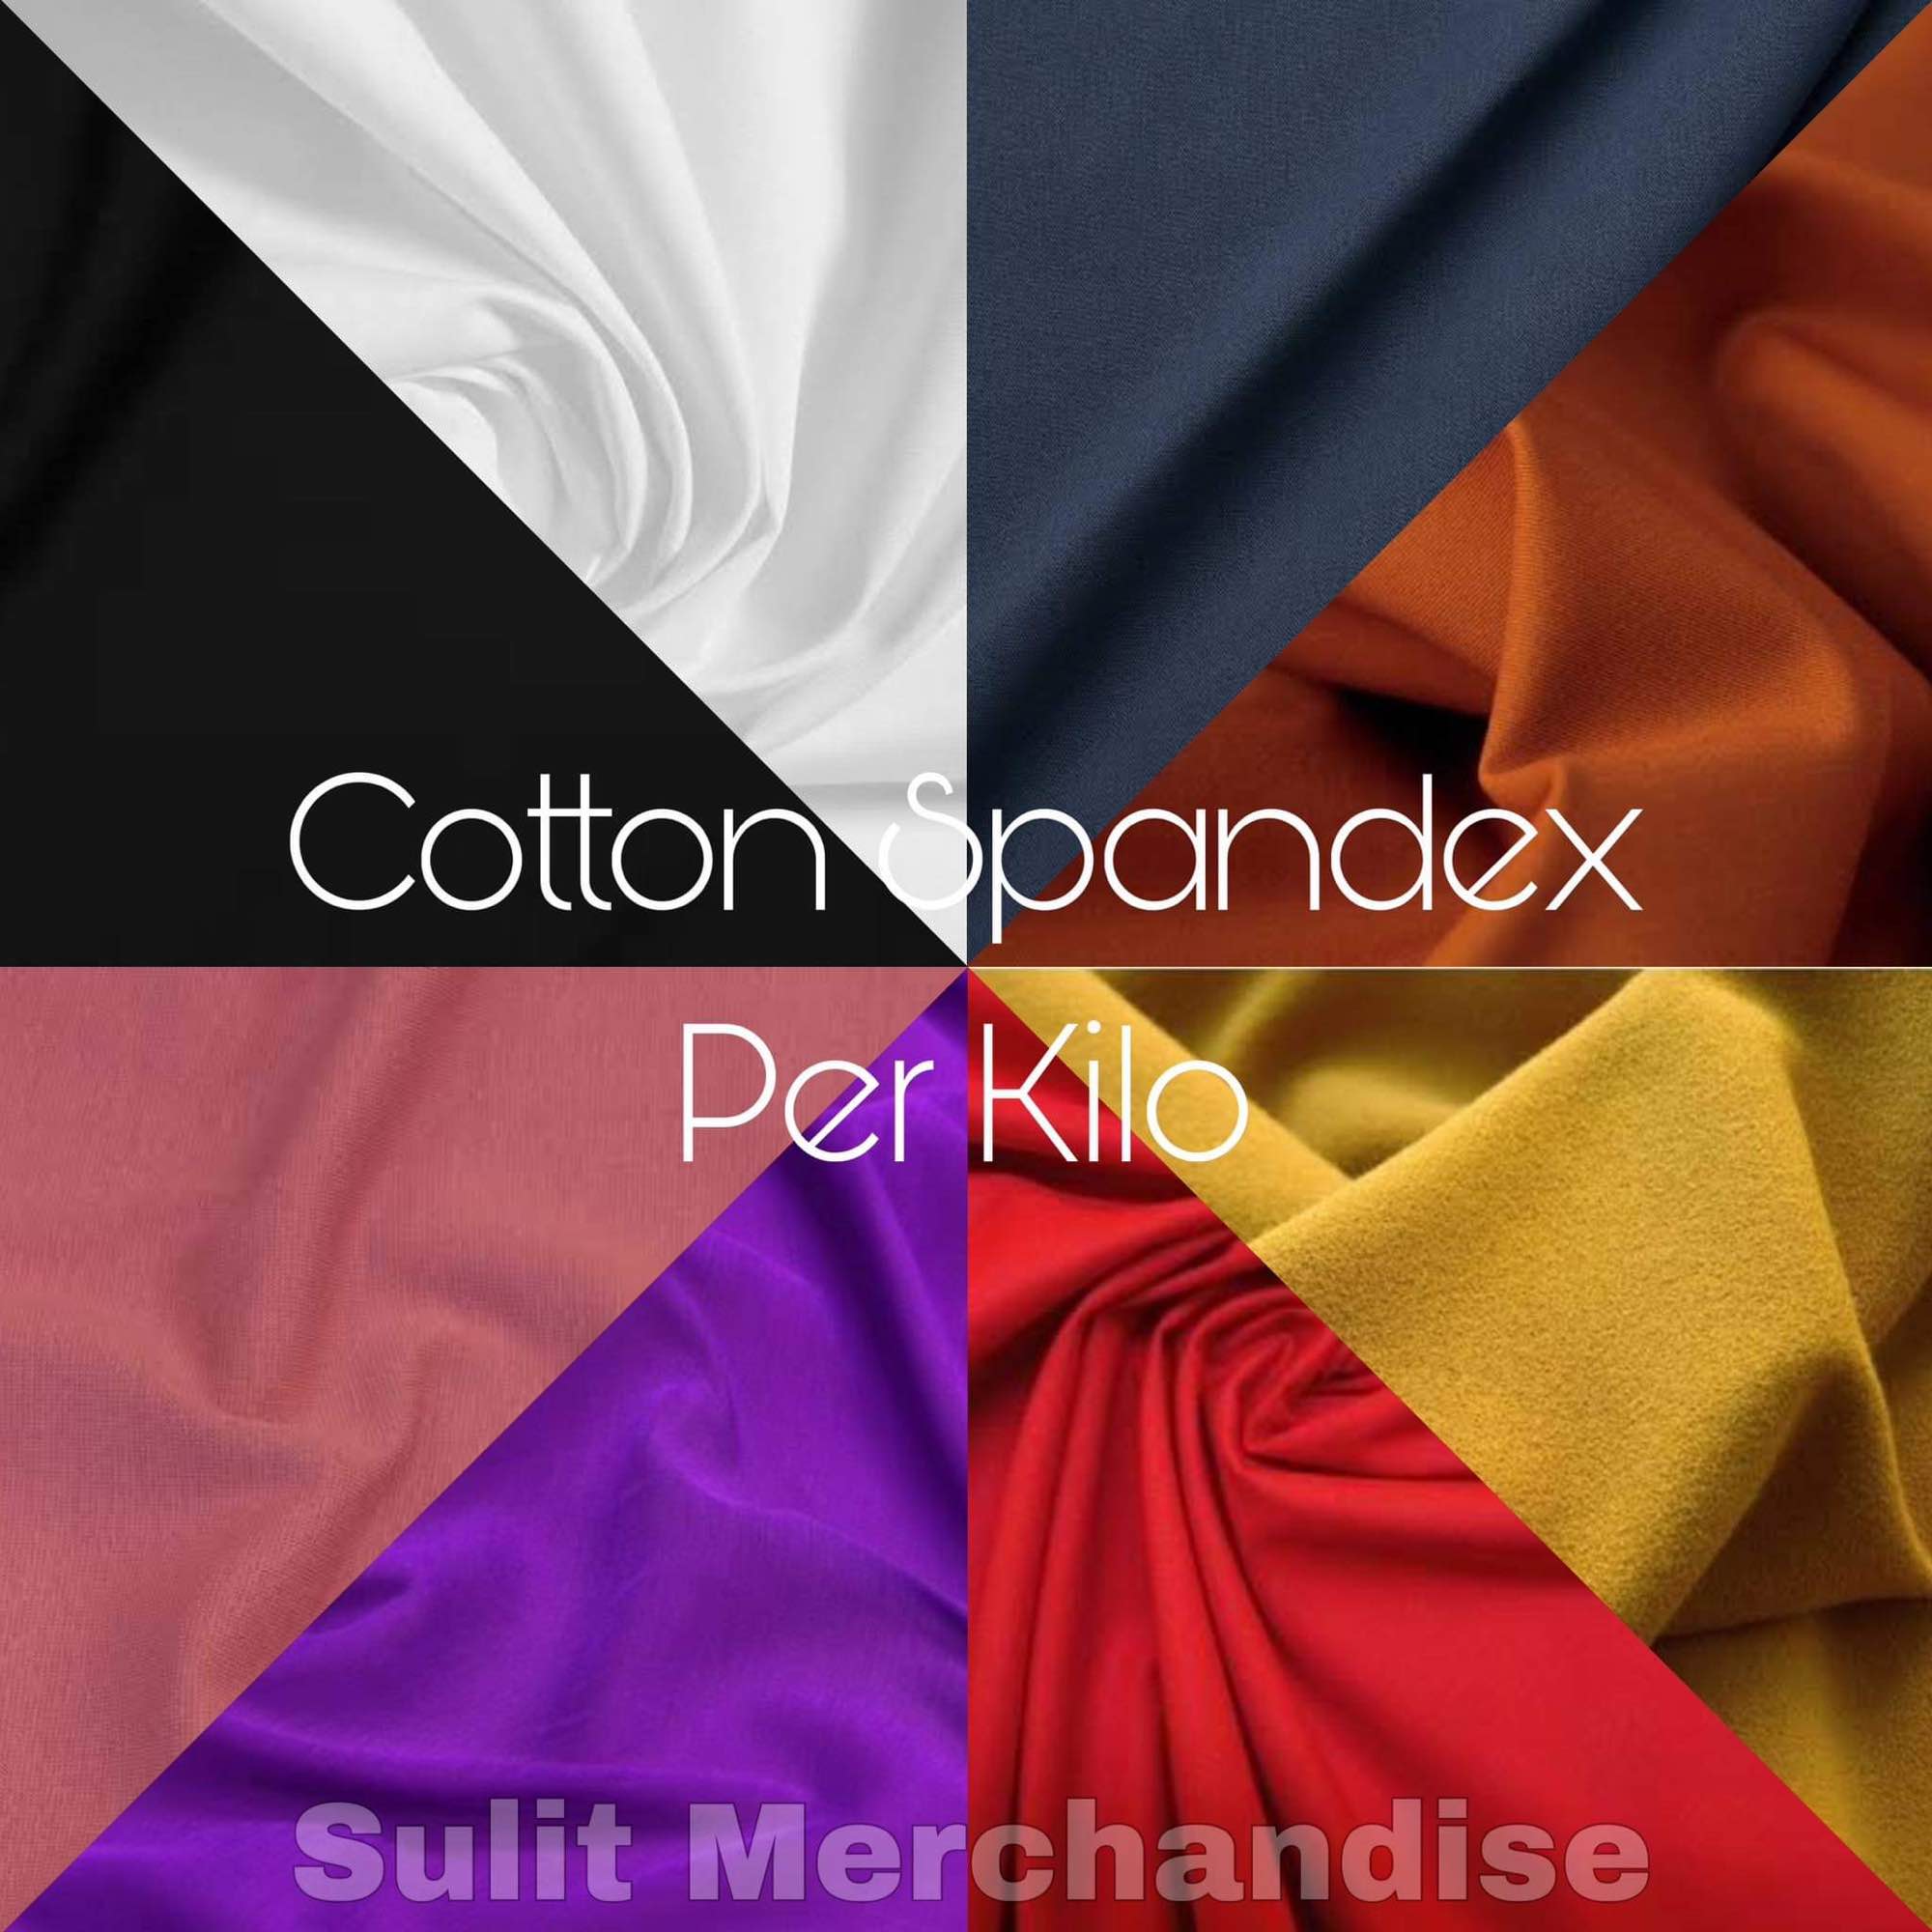 Cotton spandex plain per kilo